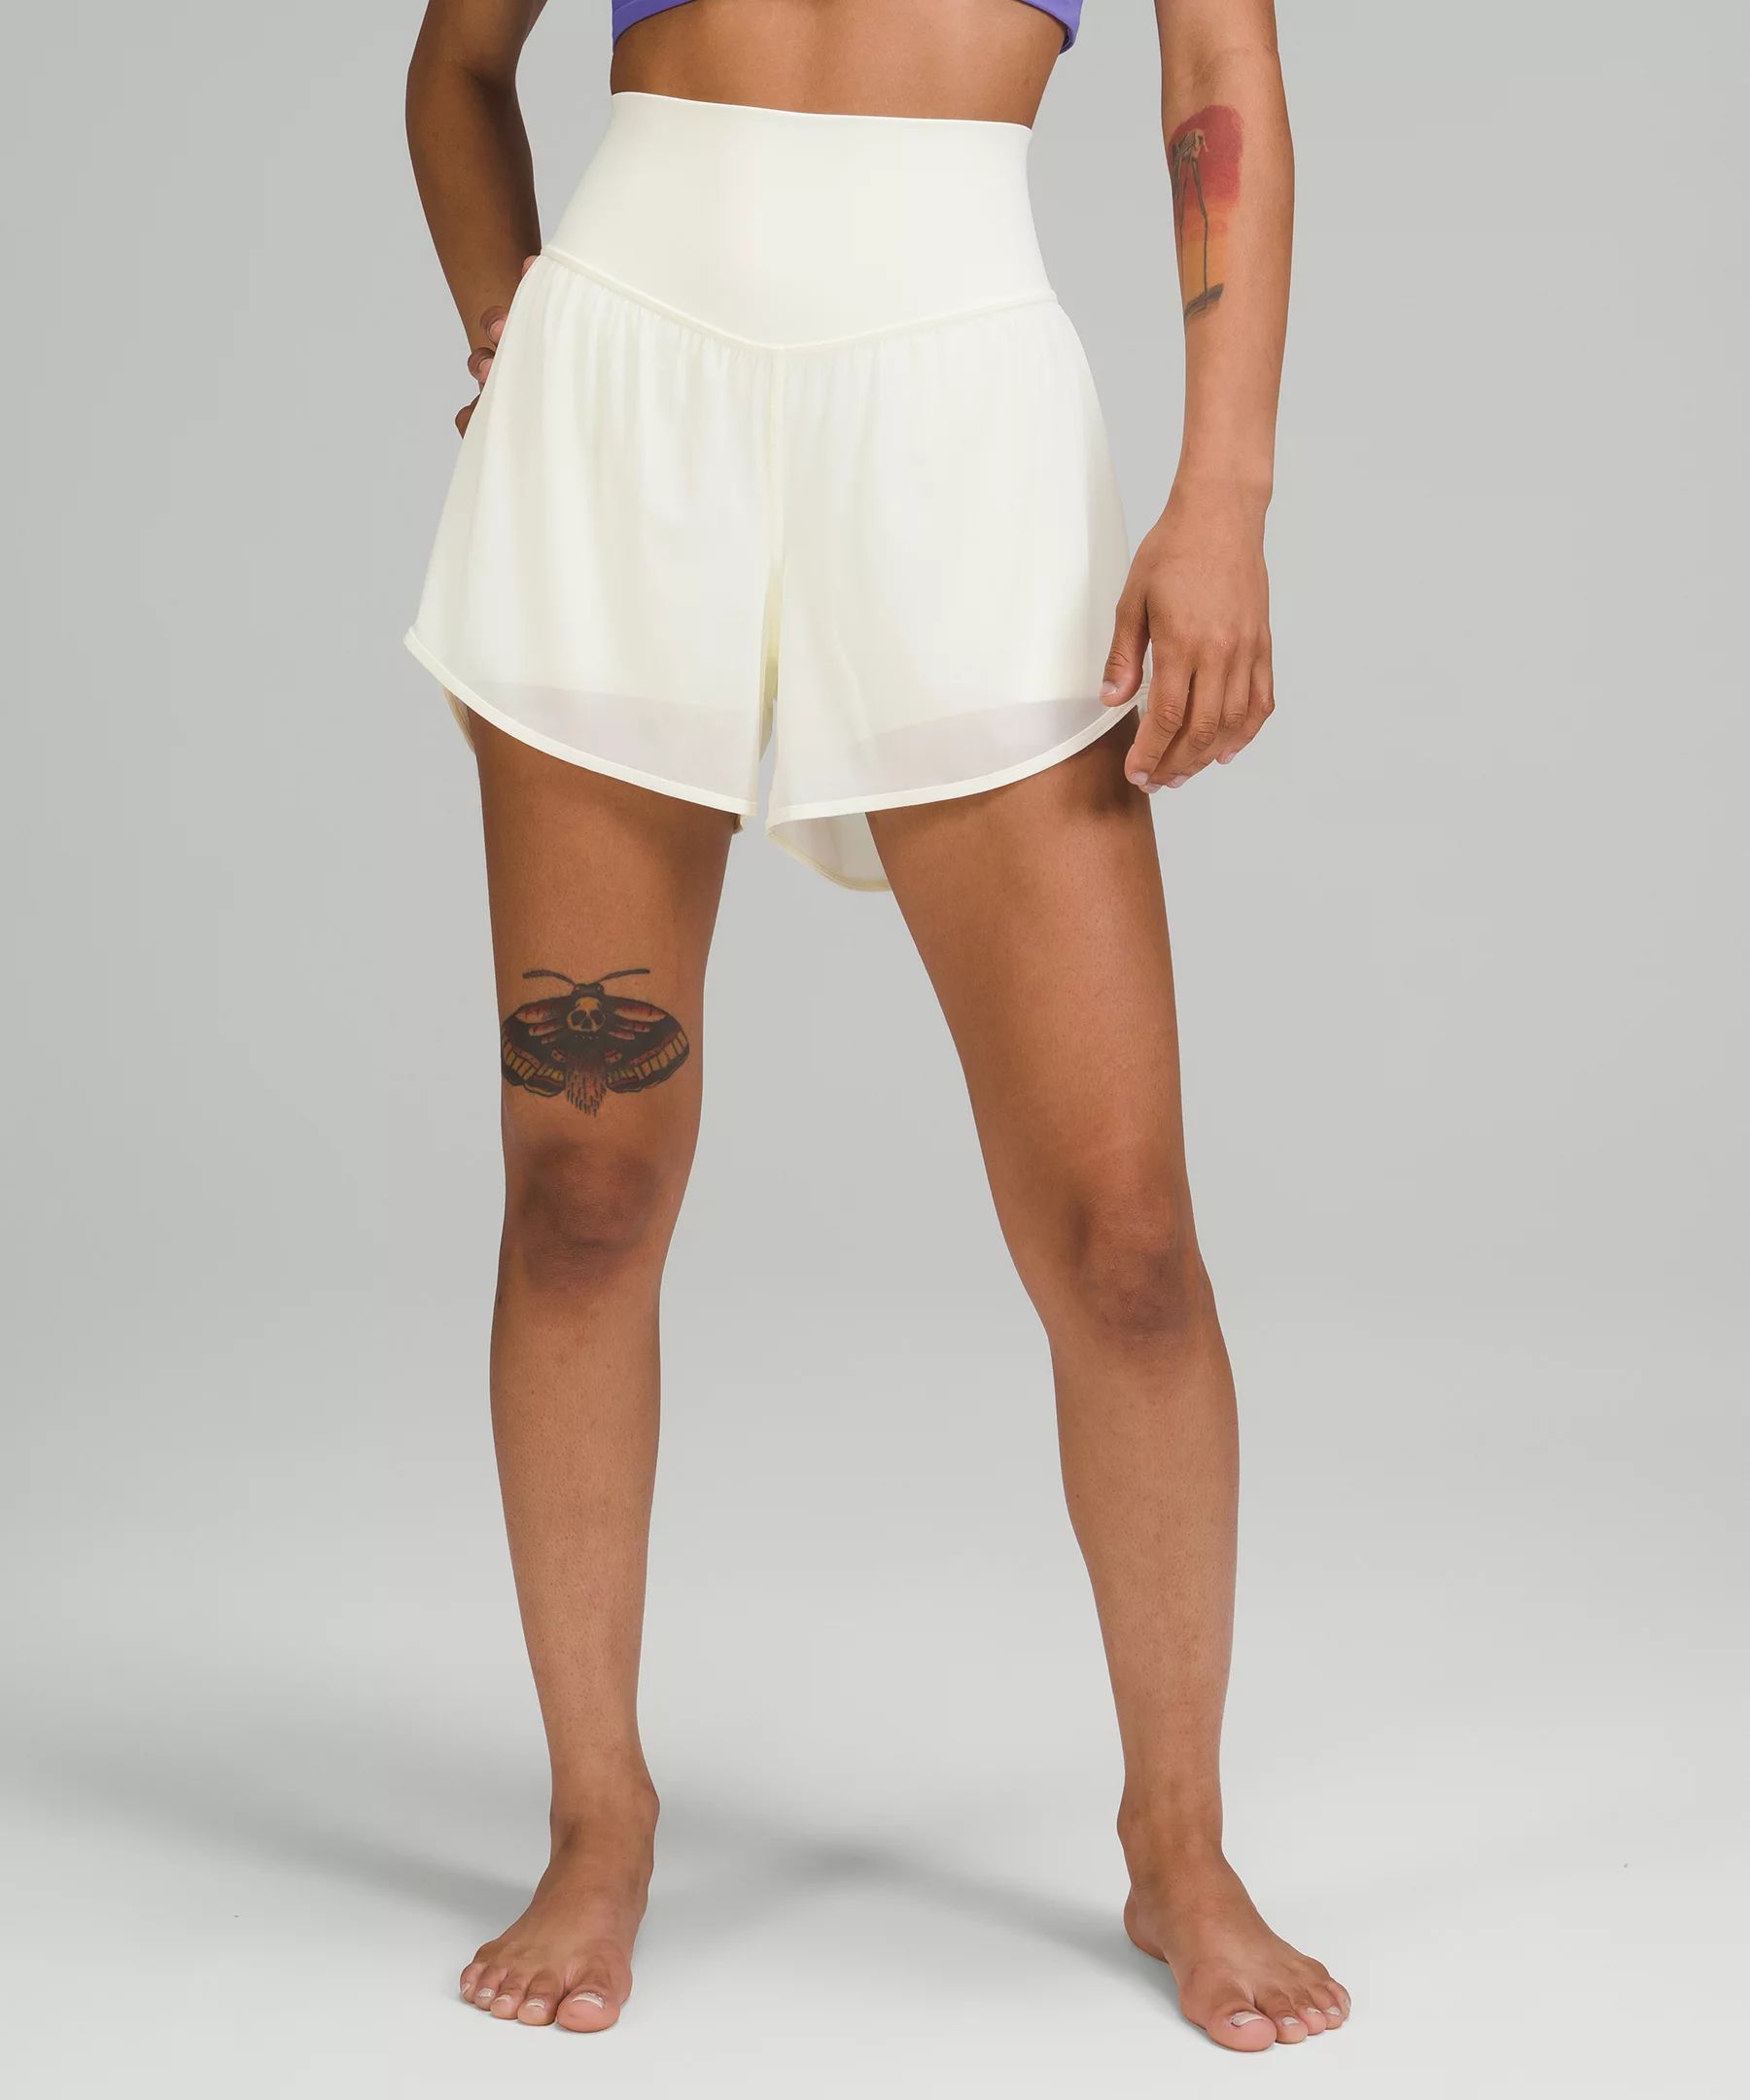 Nulu and Mesh High-Rise Yoga Short 3.5" | Women's Shorts | lululemon | Lululemon (US)